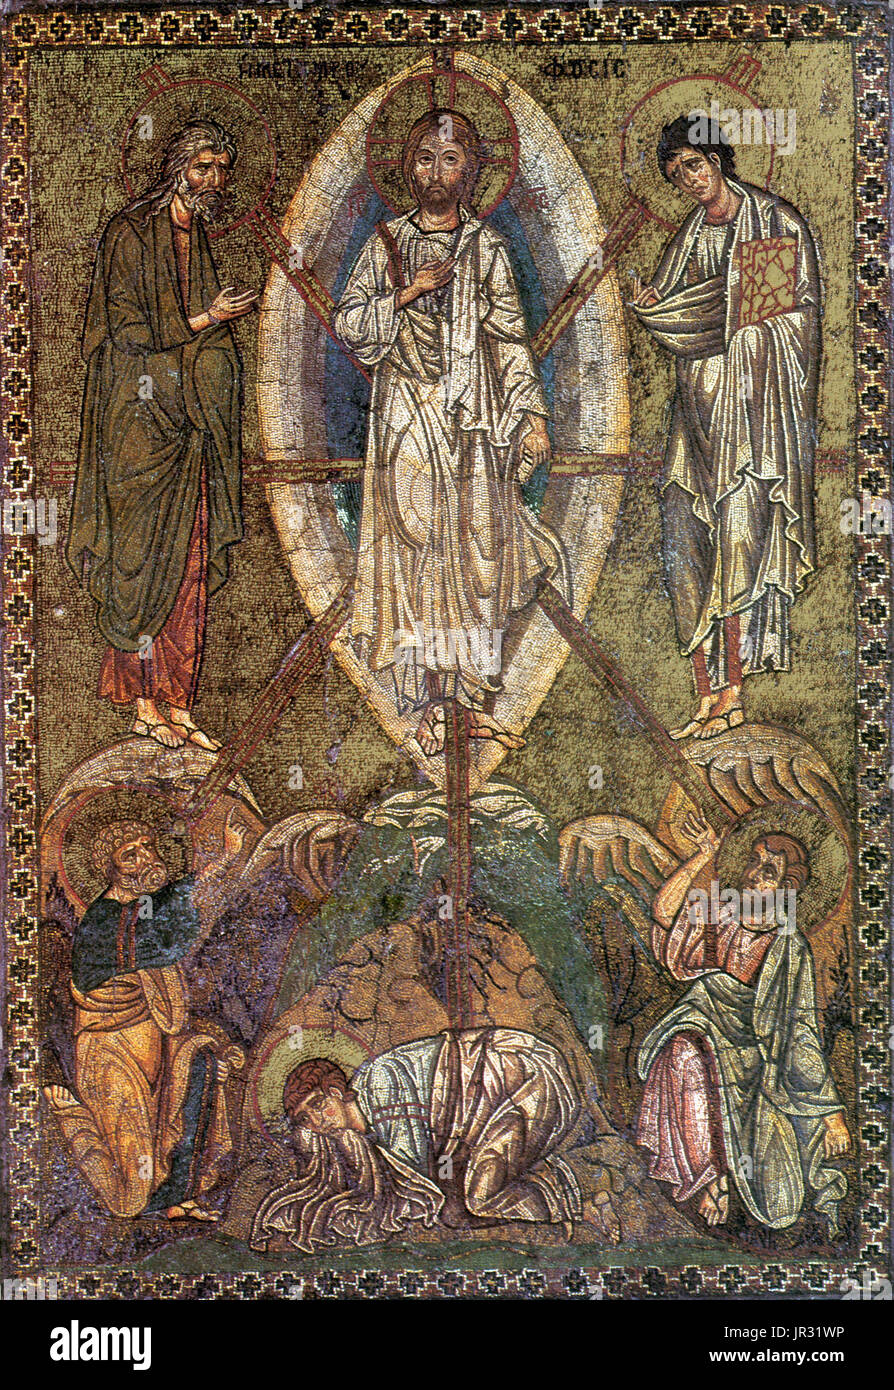 Portable de l'école byzantine icône représentant la transfiguration de Jésus. La transfiguration de Jésus a été un sujet important dans l'art chrétien, surtout dans l'Eglise d'Orient, dont certains des plus remarquables icônes indiquent la scène. Mosaïques ont été plus essentielle à la culture byzantine que de celle de l'Europe de l'Ouest. L'intérieur des églises byzantines étaient généralement couvertes de mosaïques dorées. L'art de la mosaïque s'est épanouie dans l'Empire byzantin à partir du 6ème au 15ème siècles. Banque D'Images